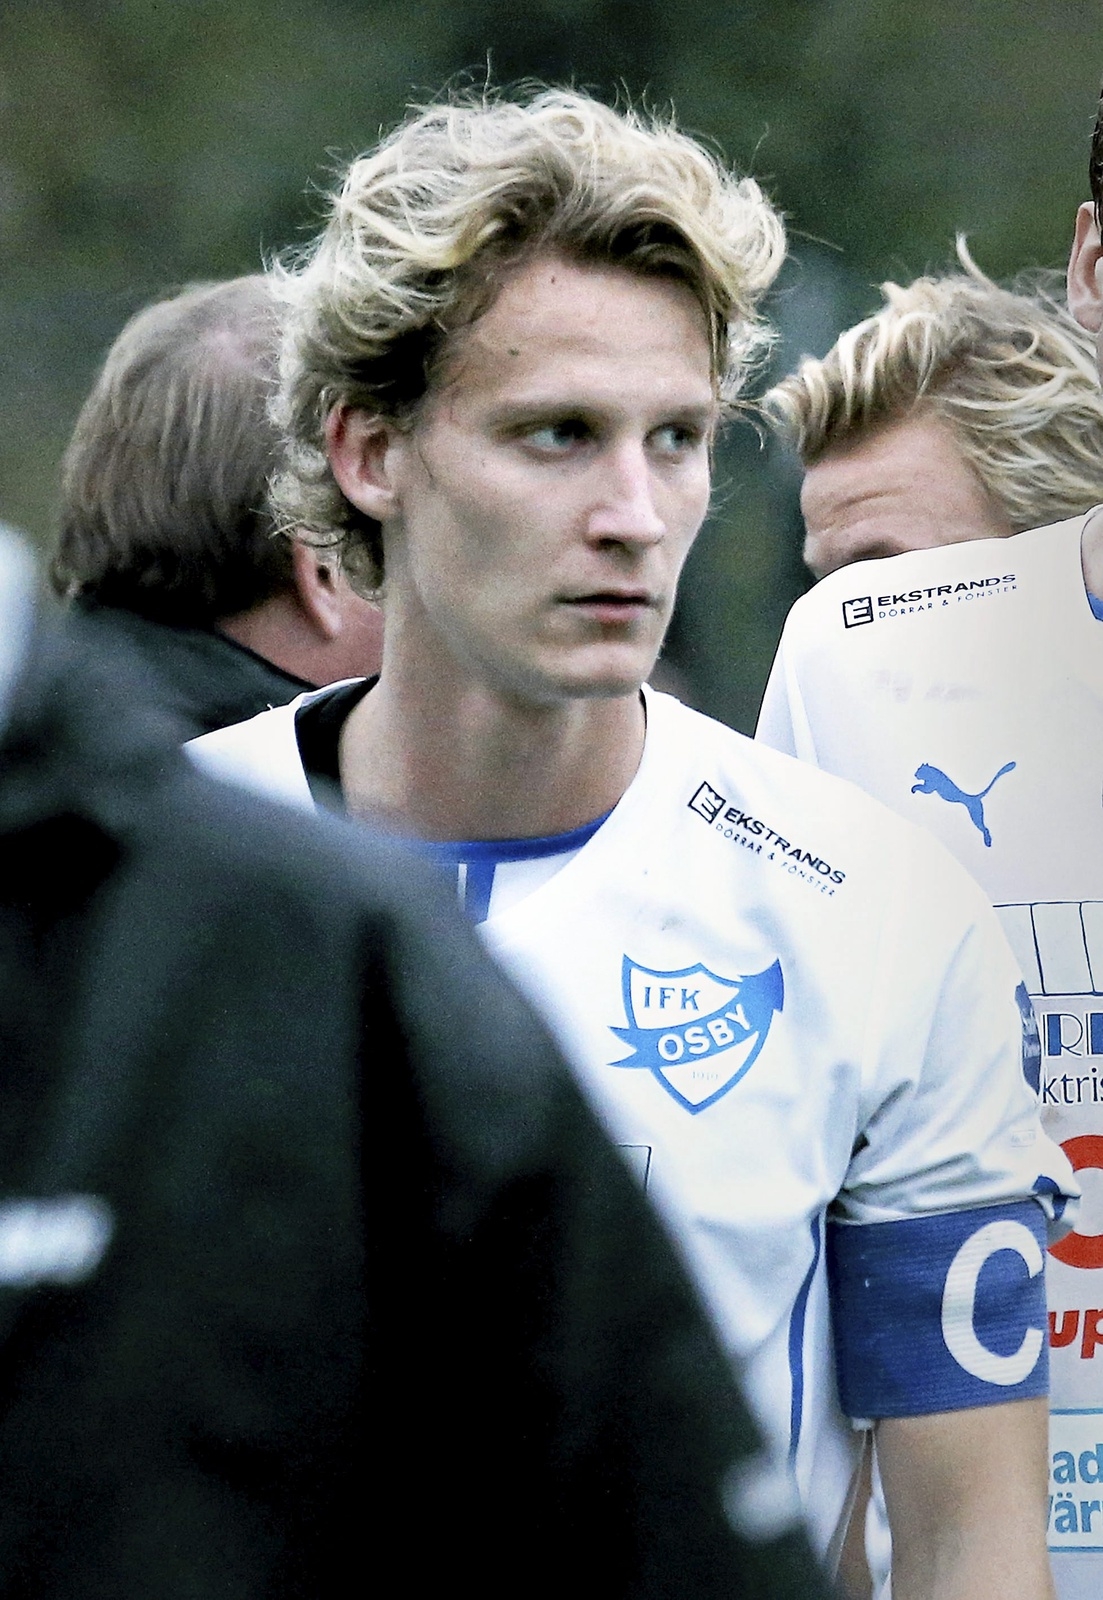 Jonatan Persson var tillbaka på Osby IP efter mer än två år.
Foto: STEFAN SANDSTRÖM/ARKIV